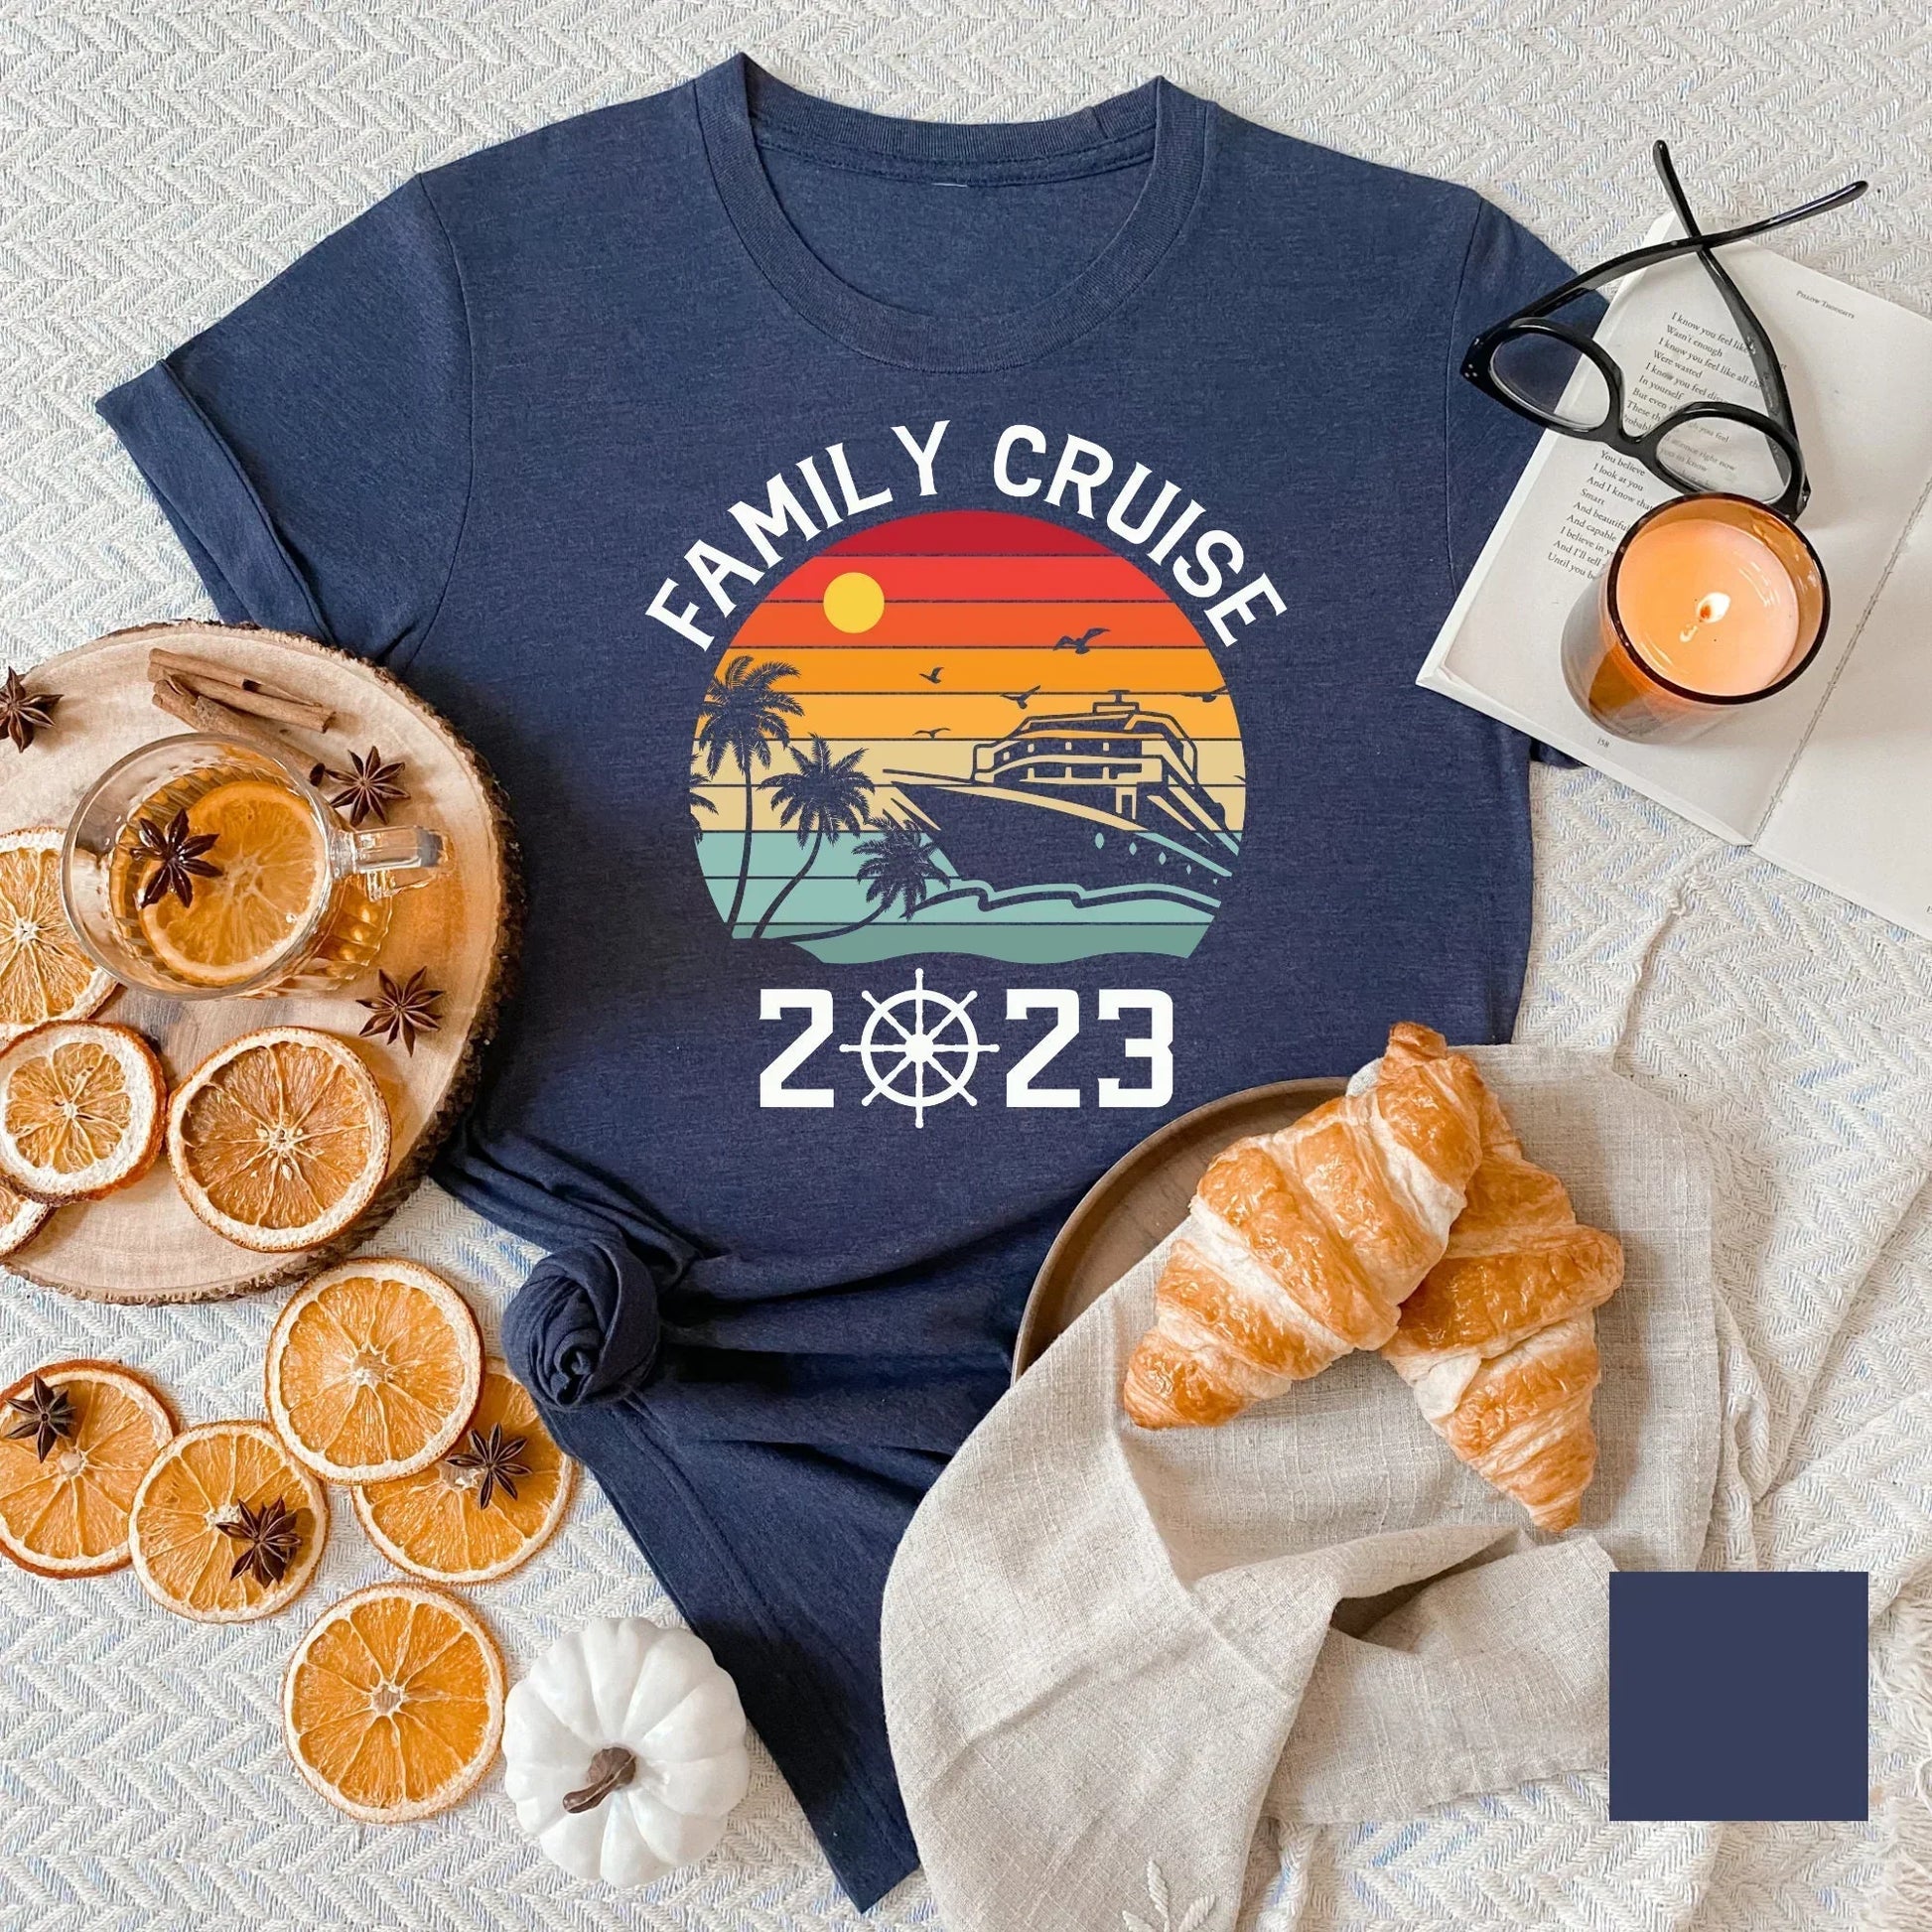 2023 Family Cruise Shirts